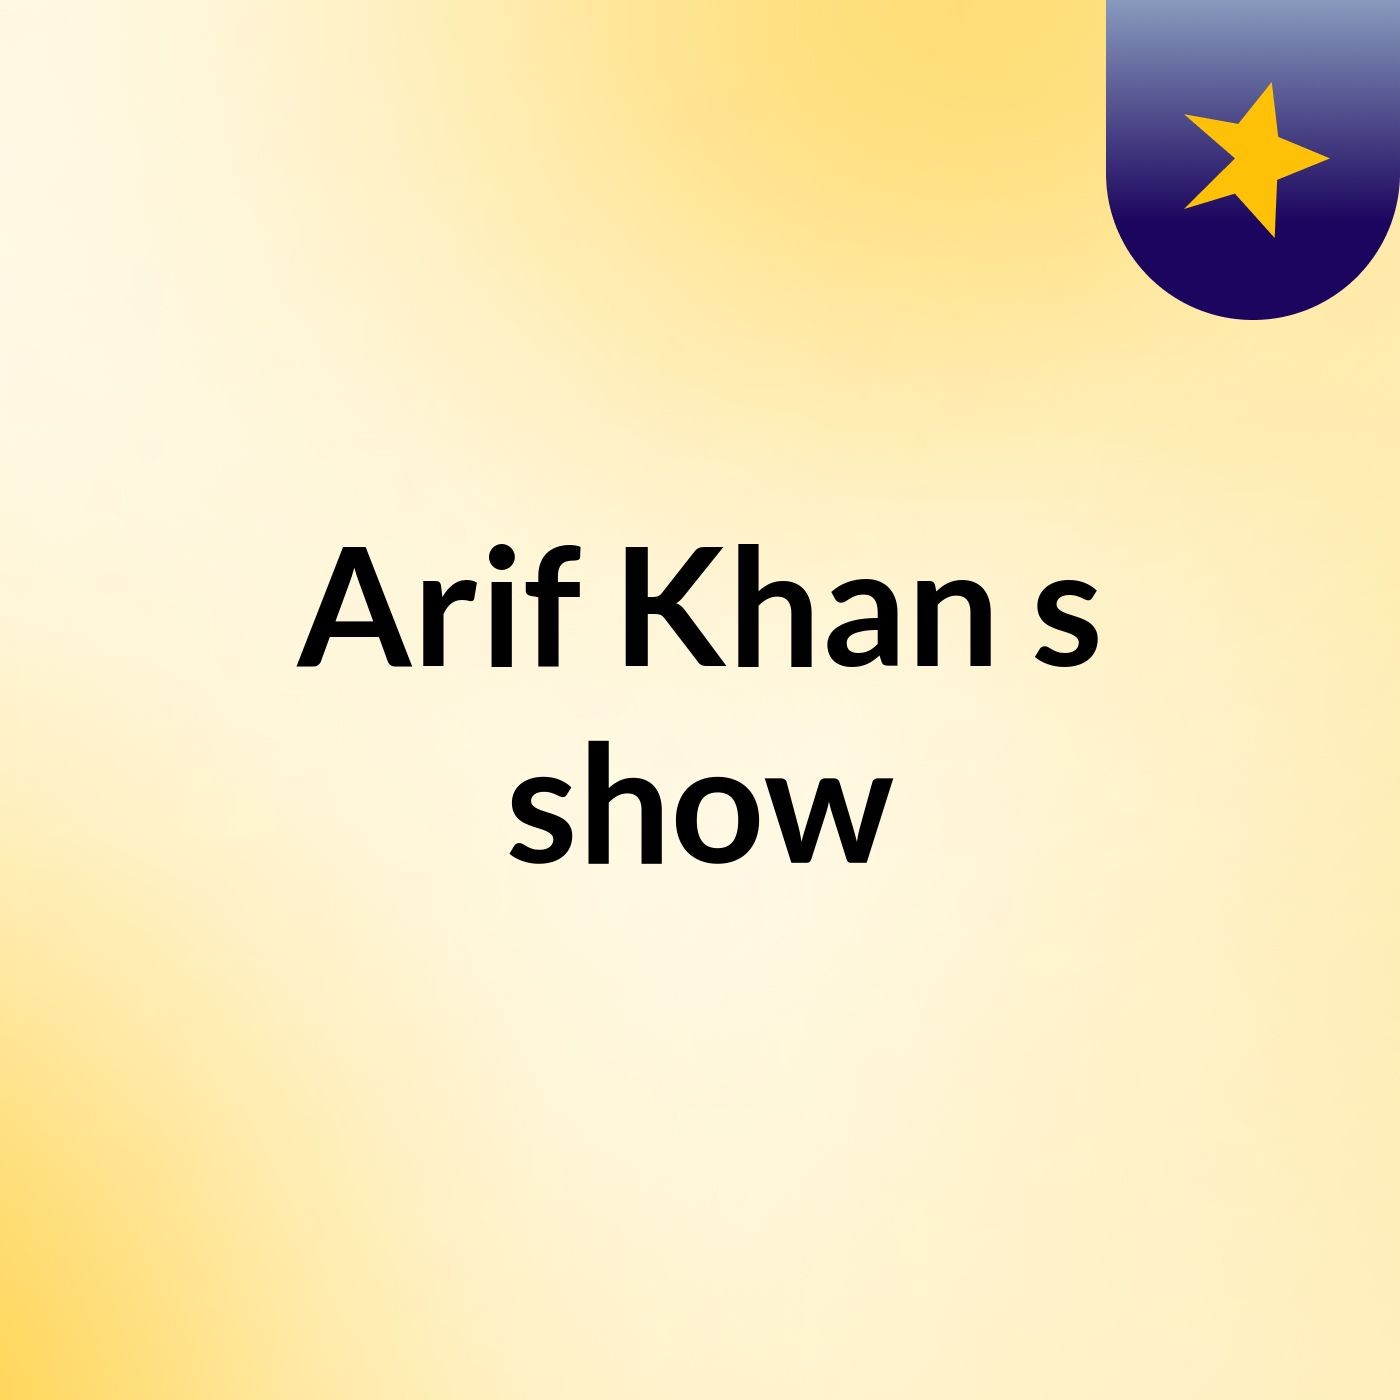 Arif Khan's show